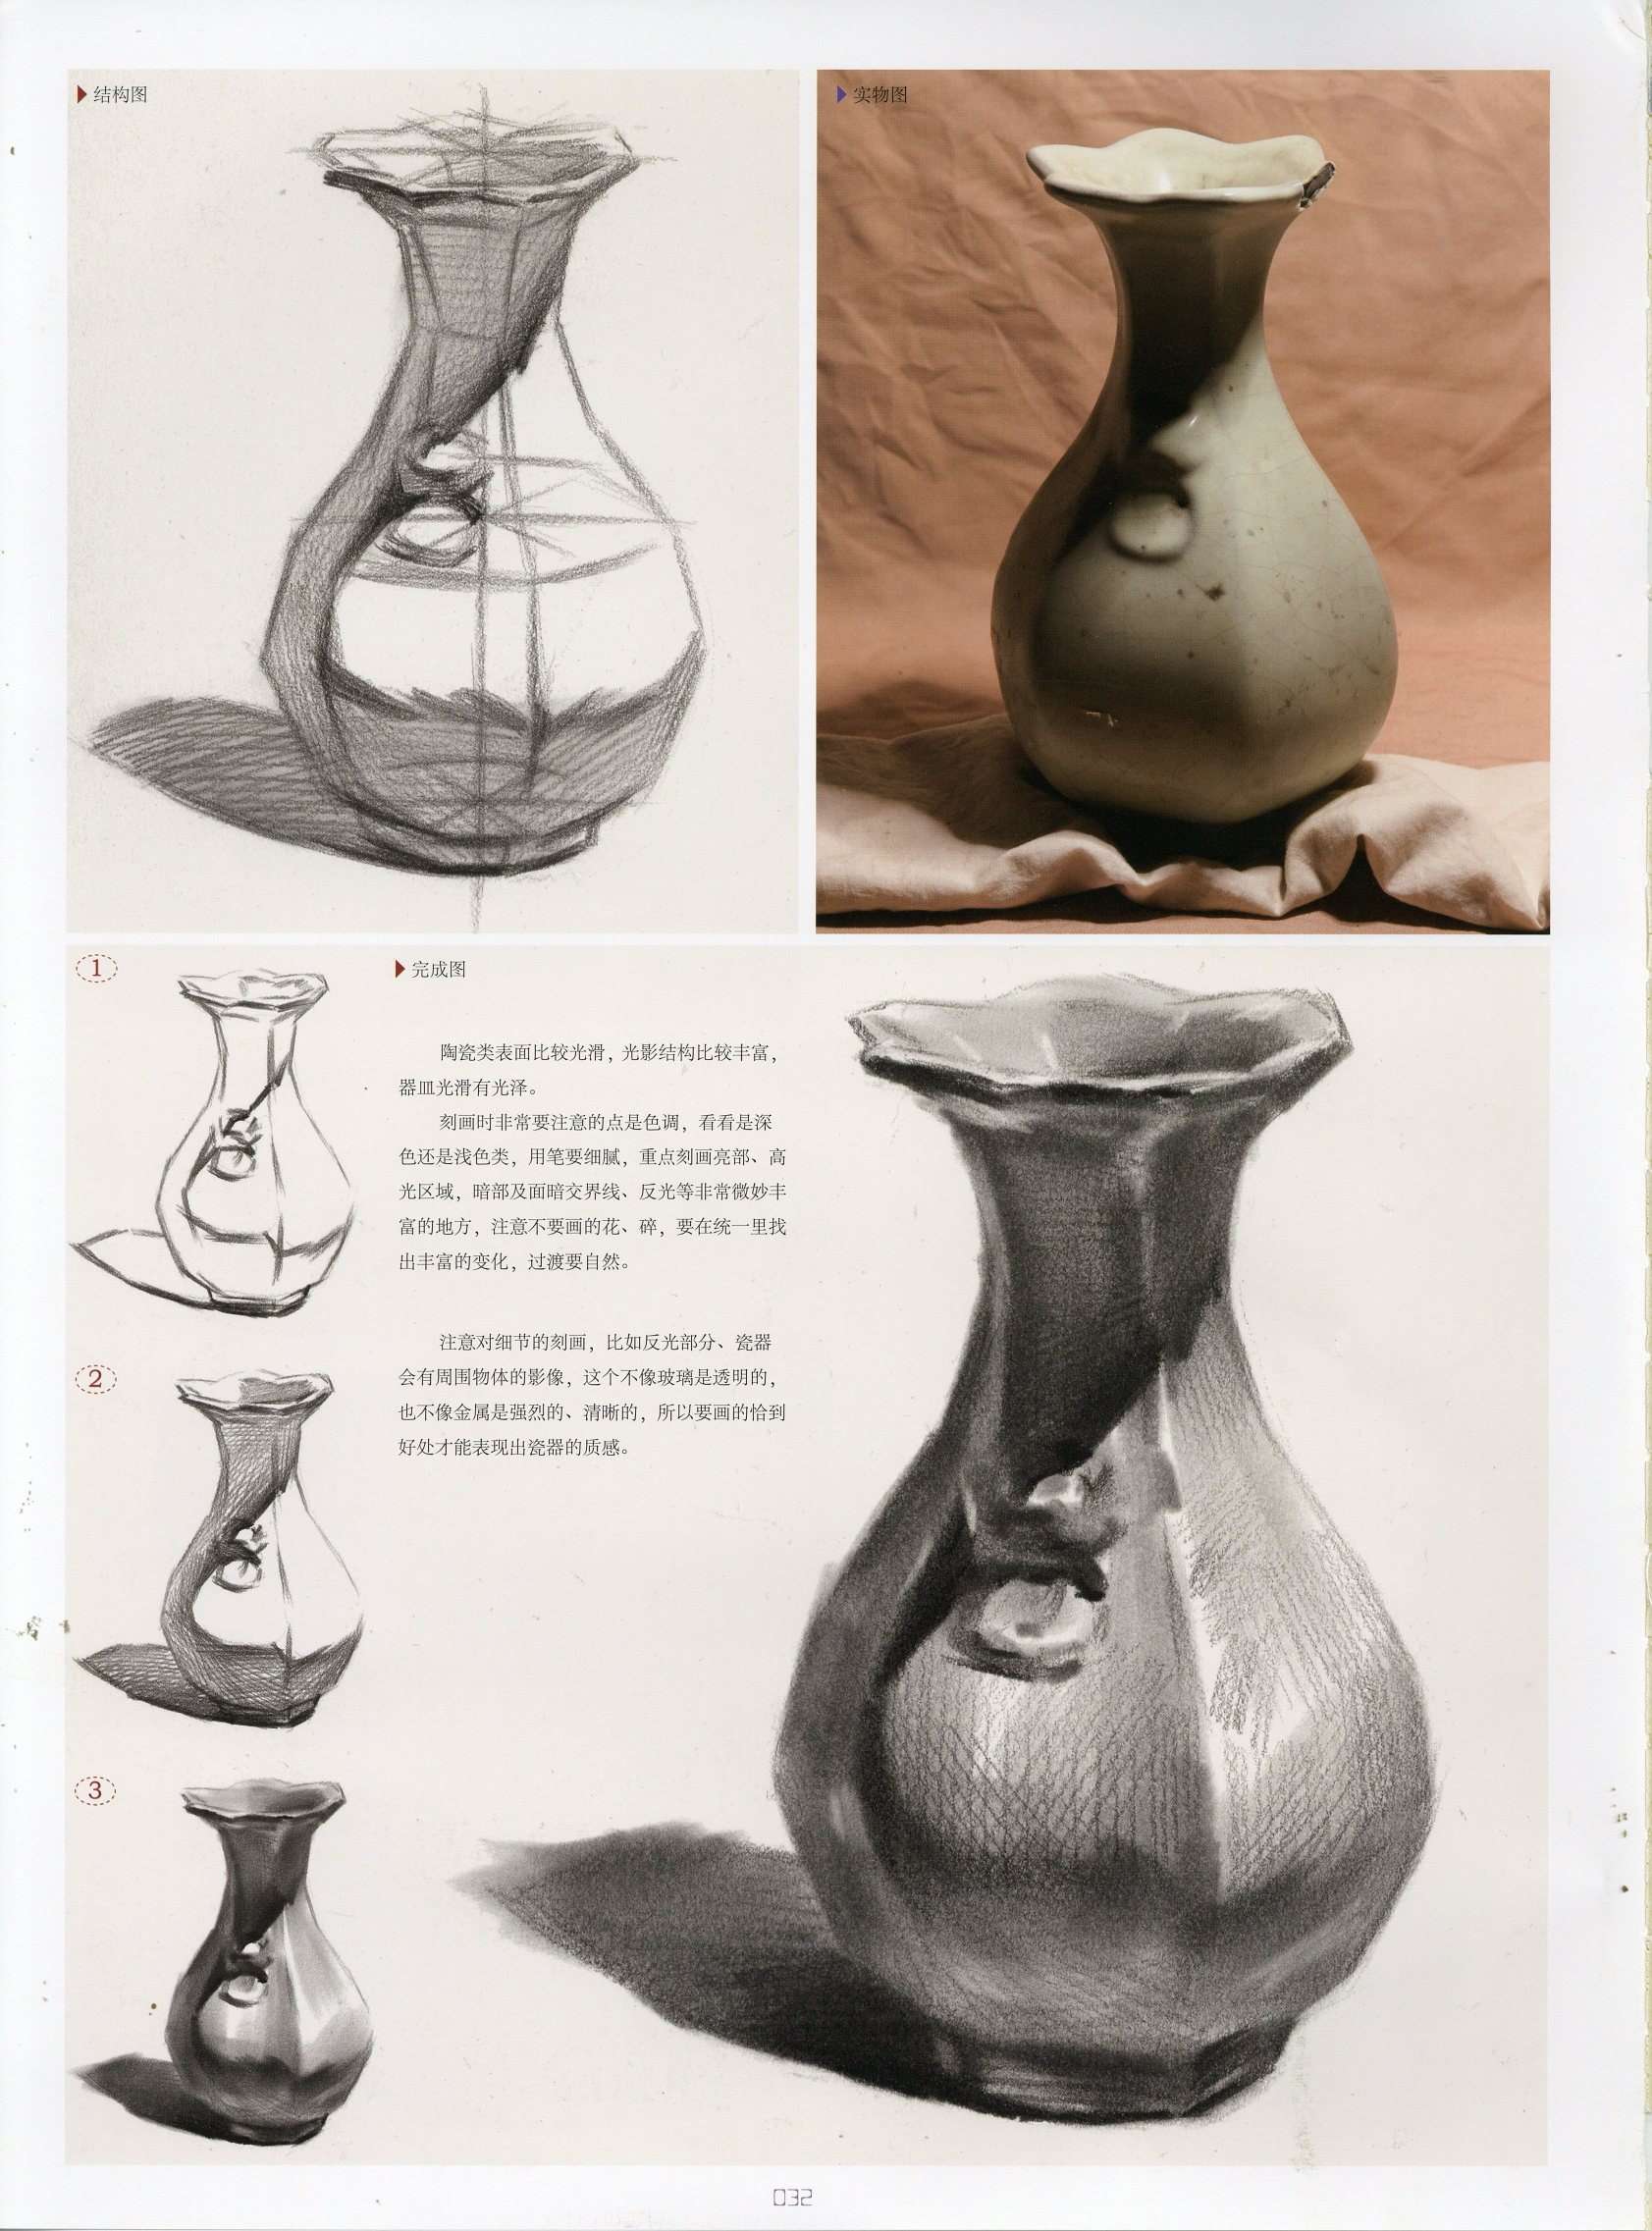 素描陶瓷瓶子怎么画 素描陶瓷瓶子画法教程步骤分析